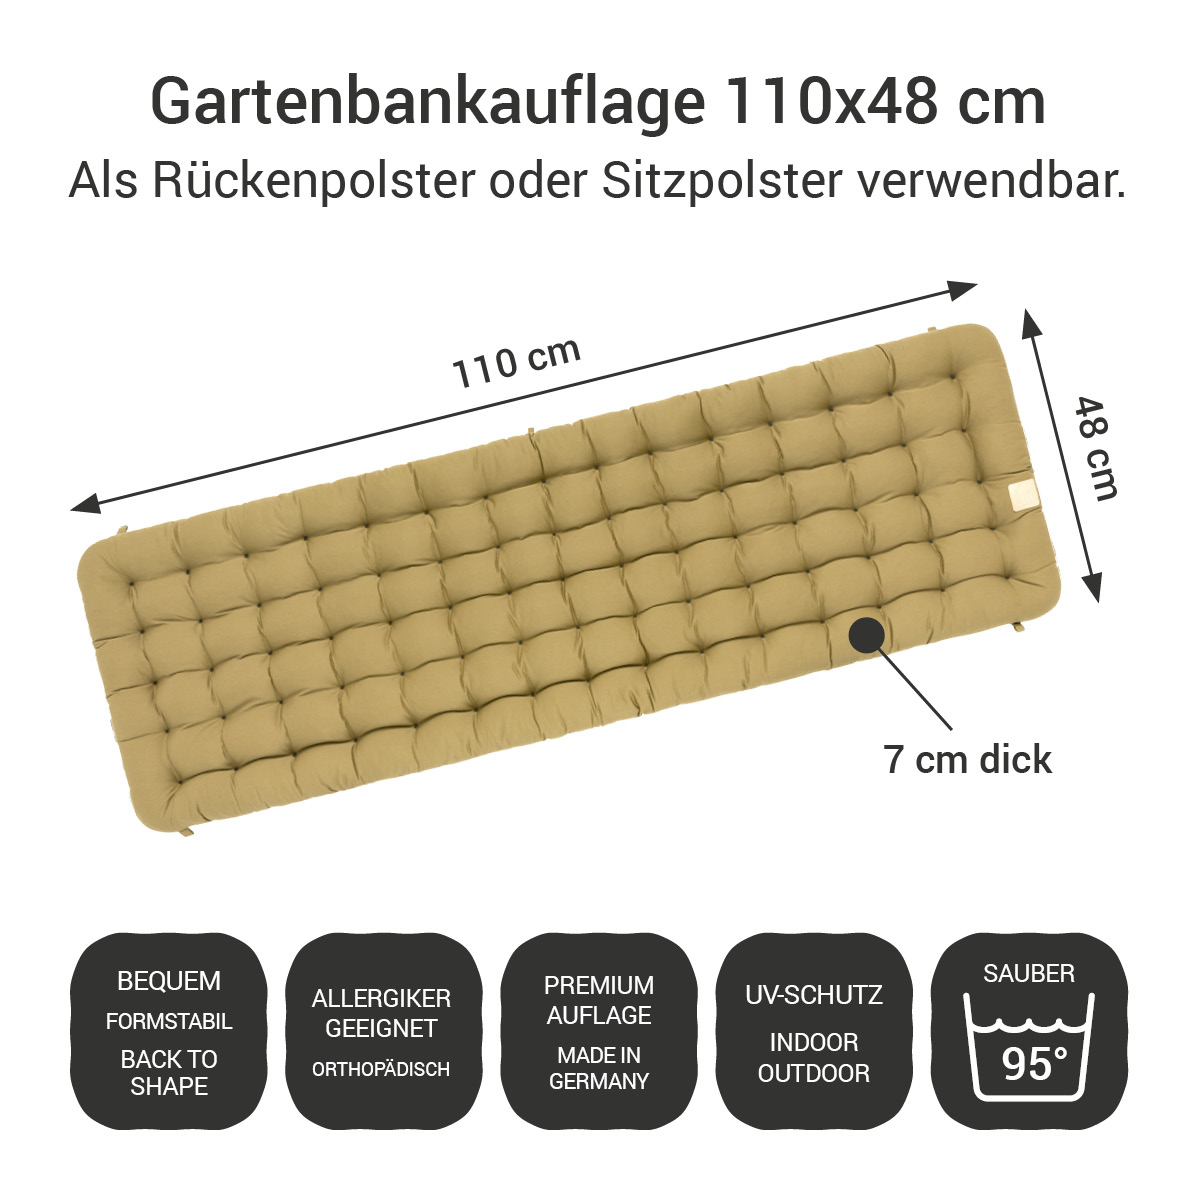 Gartenbank Auflage beige 110x48 cm / 110 x 50 cm | bequem & orthopädisch, komplett im Ganzen waschbar bis 95°C, wetterfest, Made in Germany